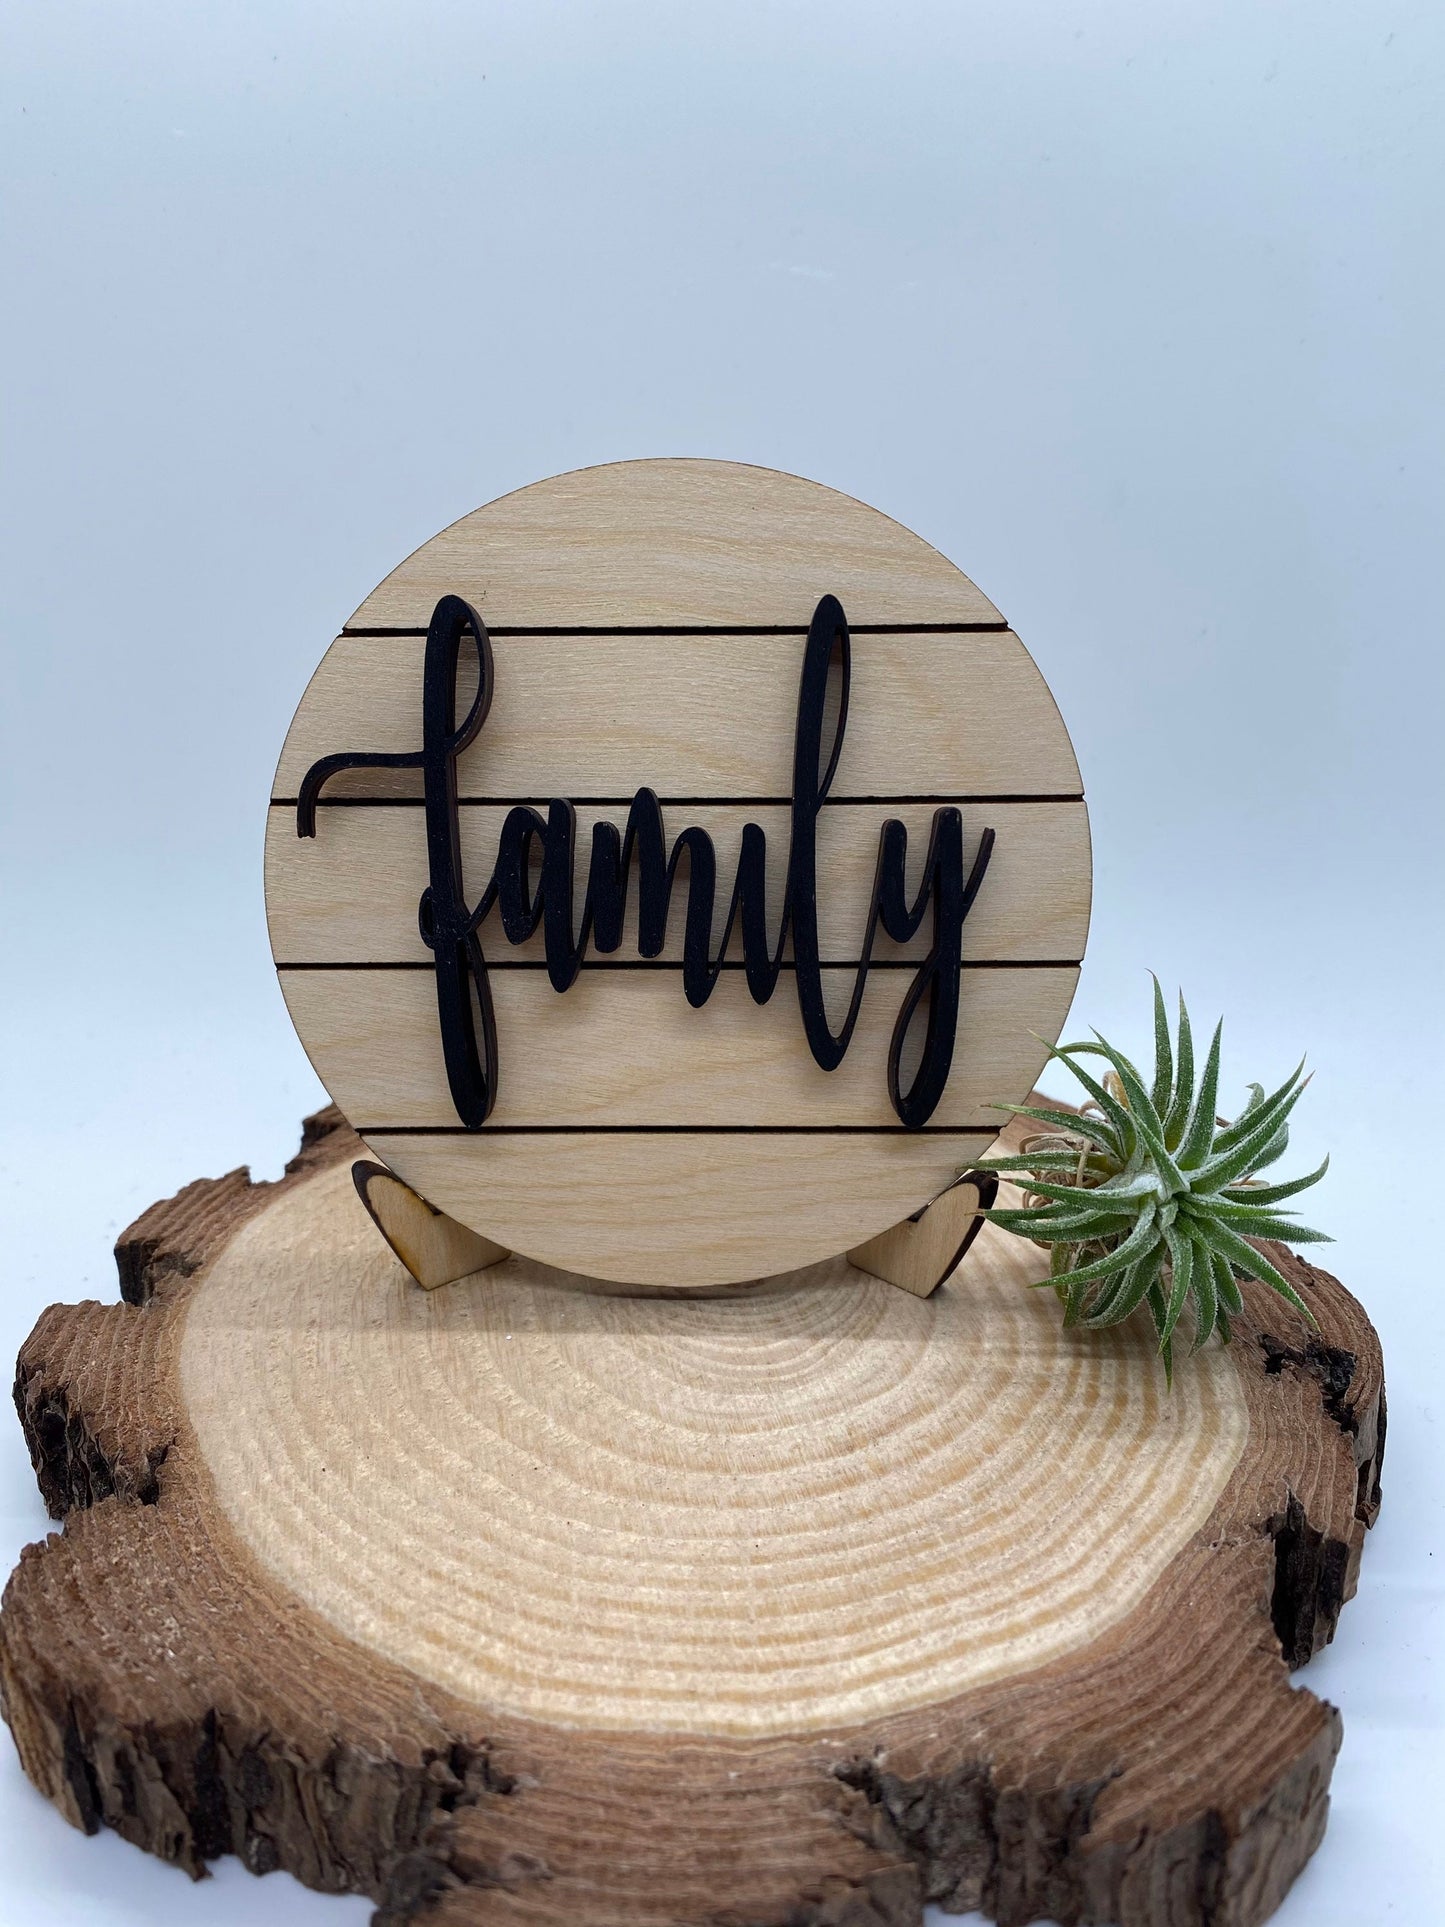 Family Tiered Tray Sign, Mini Shiplap Tray Sign, Tiered Tray Decor, 4” Round Tiered Tray Sign, Wood Tiered Tray Sign, Tiered Tray